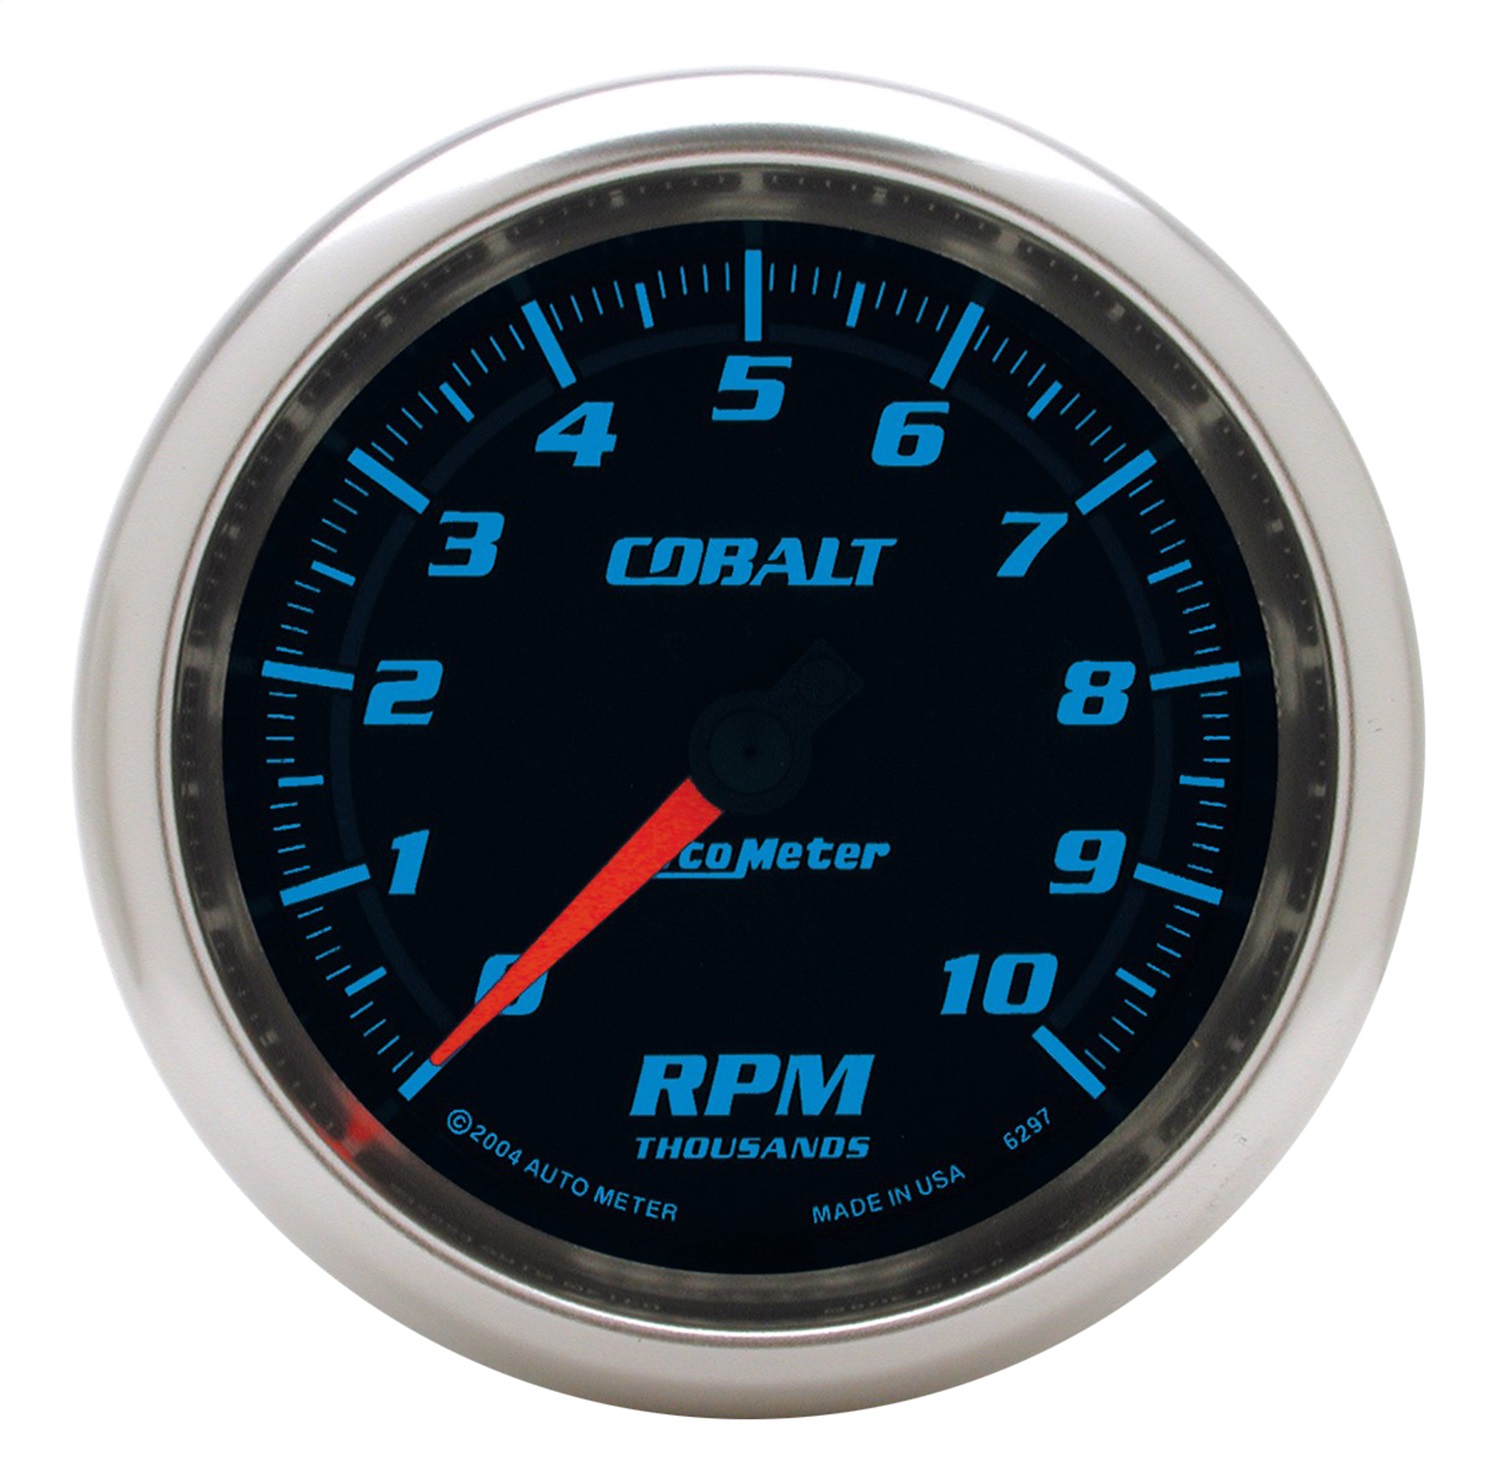 Auto Meter Auto Meter 6297 Cobalt; In-Dash Tachometer